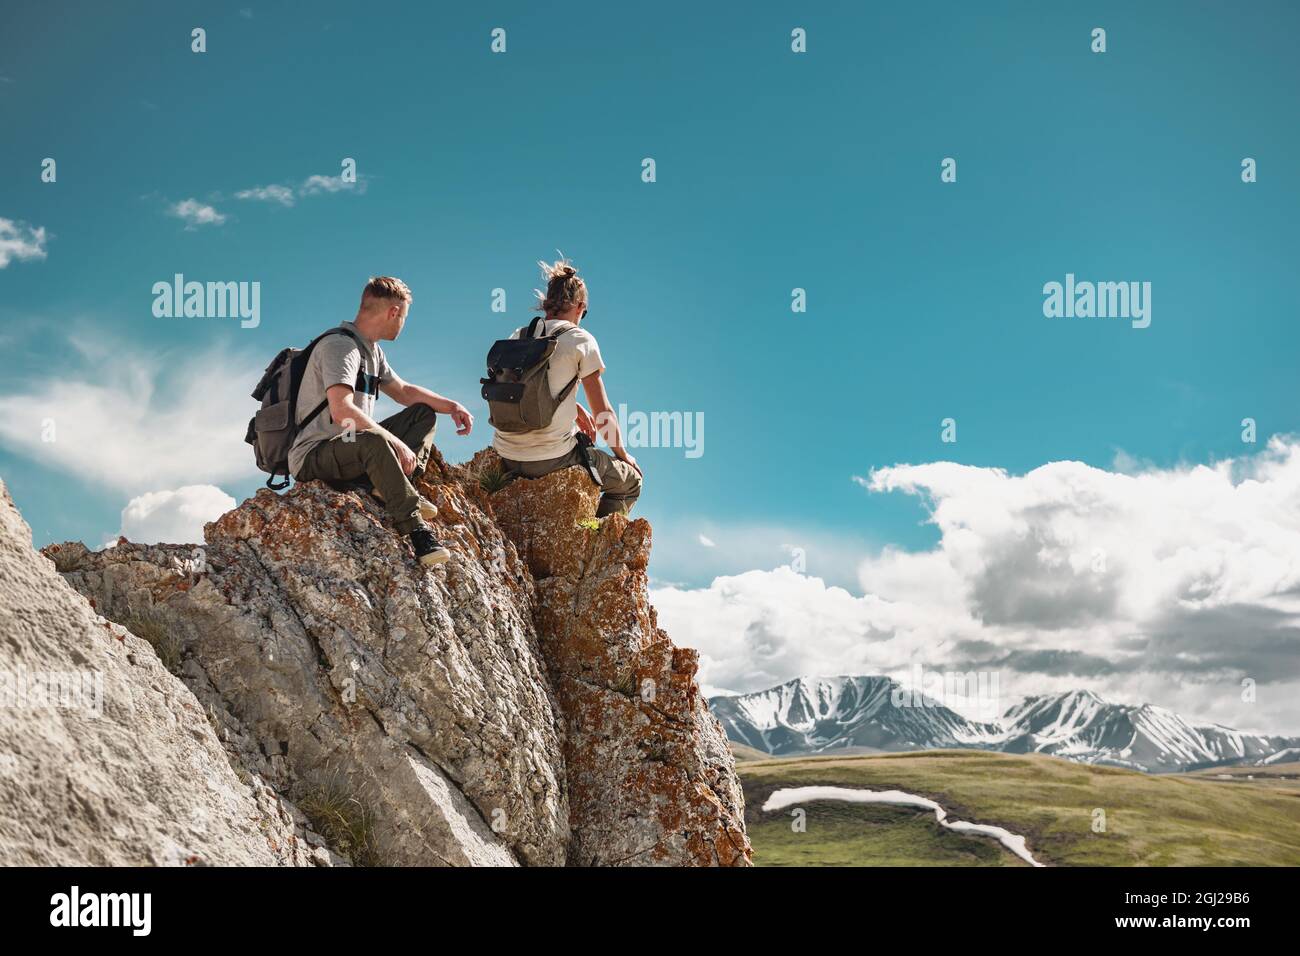 Zwei junge Wanderer mit kleinen Rucksäcken entspannen sich auf einem großen Felsen oder einer Klippe und genießen den Blick auf die Berge Stockfoto